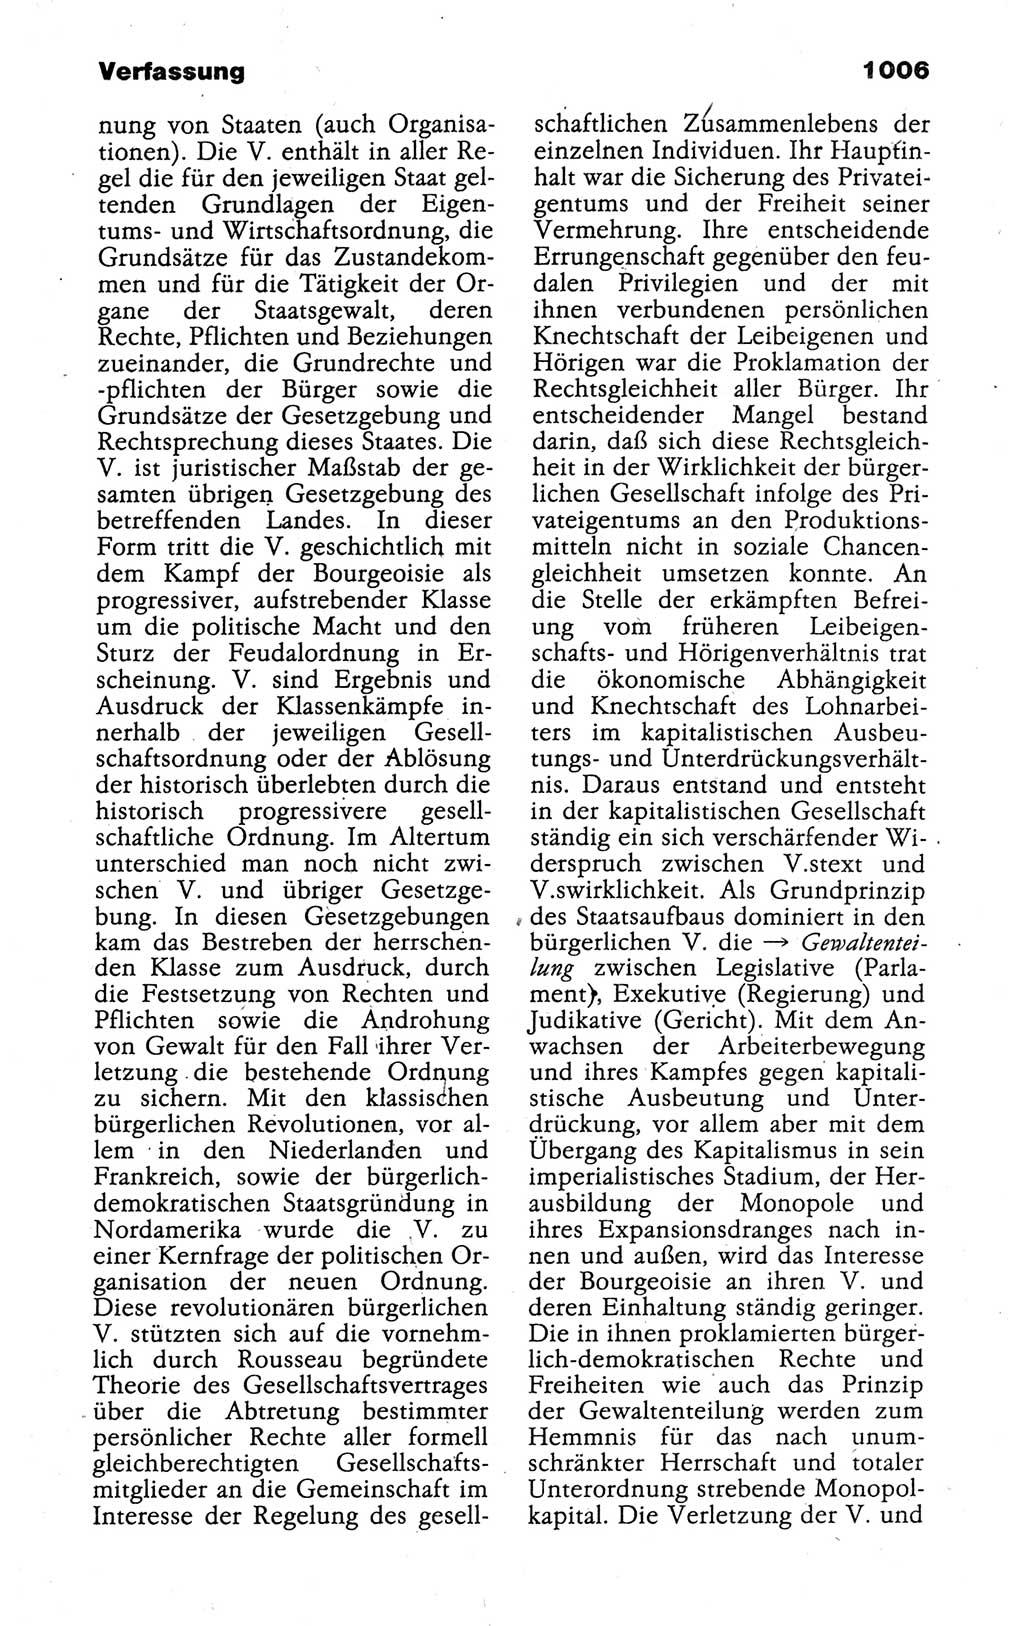 Kleines politisches Wörterbuch [Deutsche Demokratische Republik (DDR)] 1988, Seite 1006 (Kl. pol. Wb. DDR 1988, S. 1006)